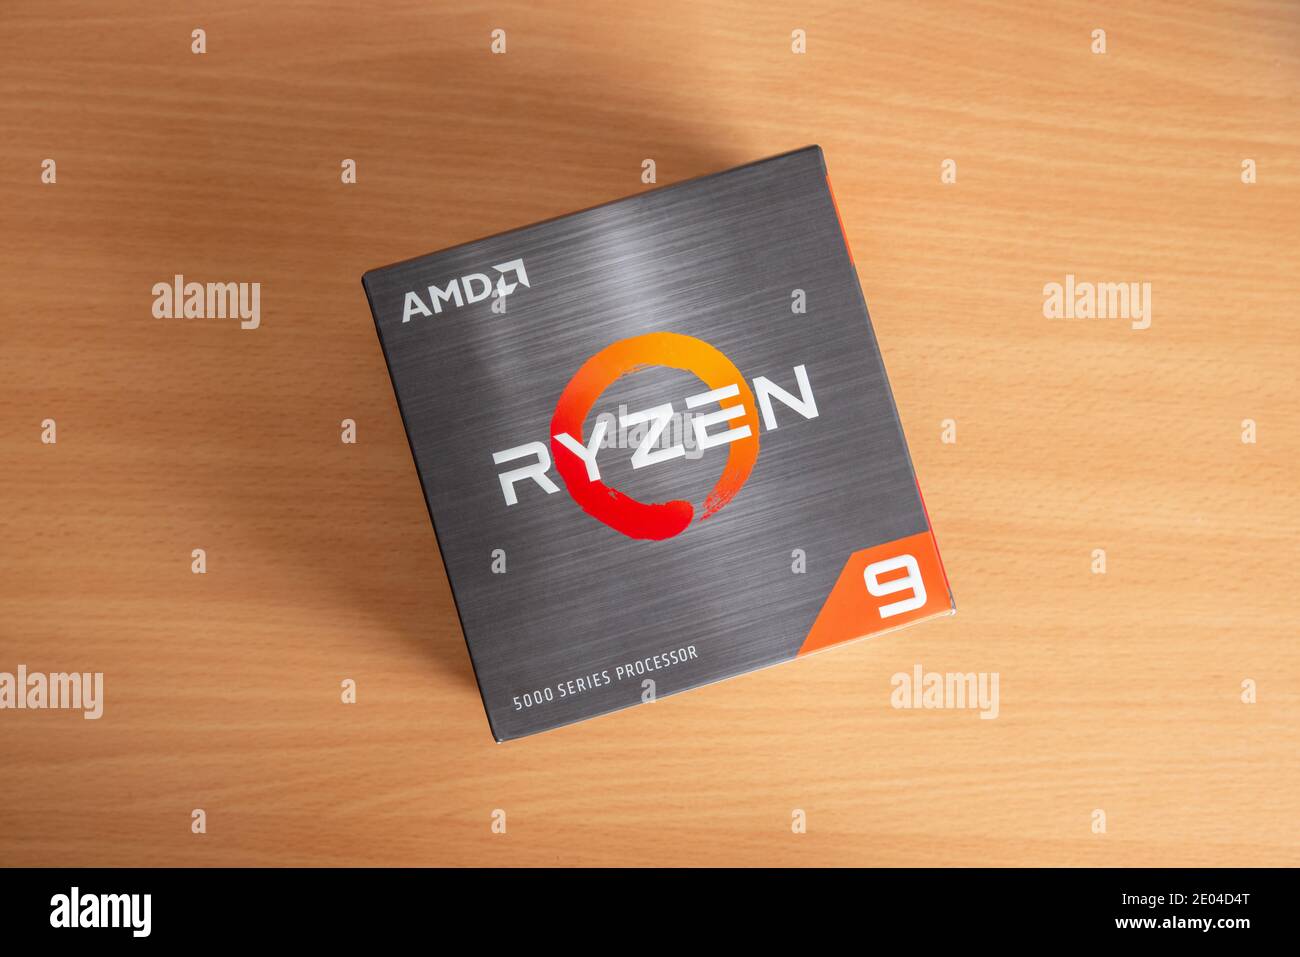 Sarajevo, Bosnien und Herzegowina - 29. Dezember 2020: Neue AMD Ryzen 9 5900x Prozessor-Box der fünften Generation auf dem Tisch Stockfoto